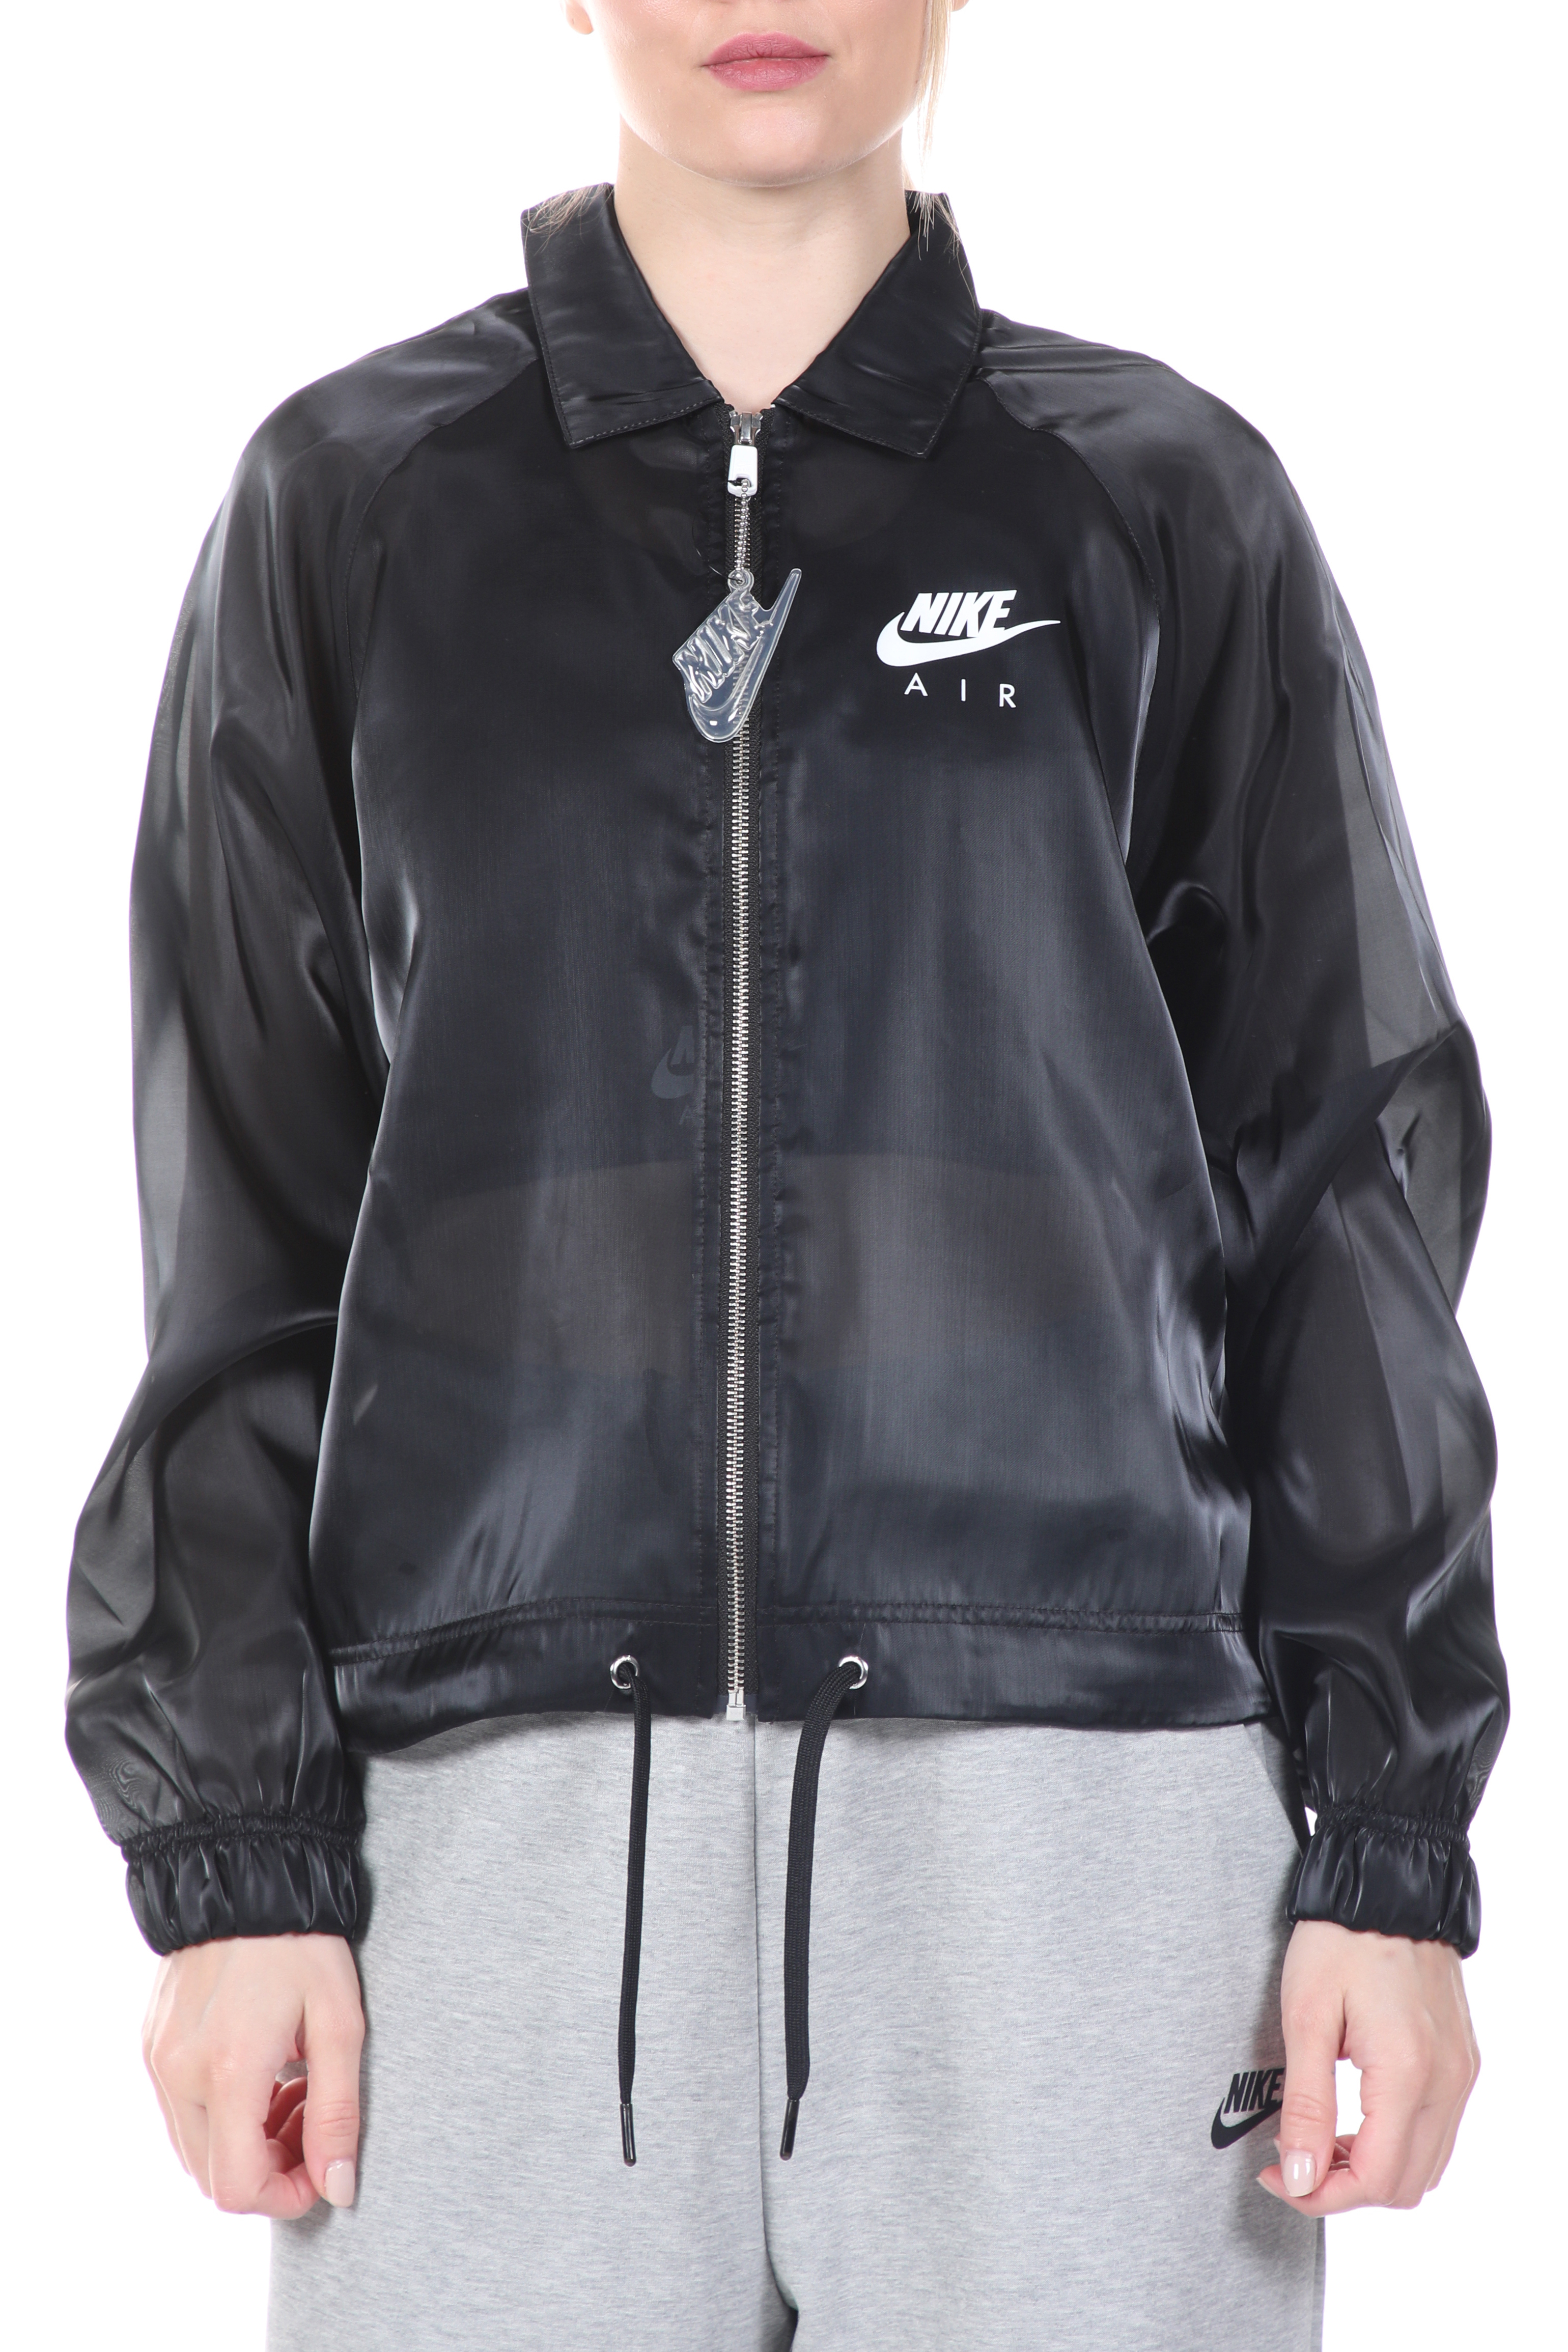 Γυναικεία/Ρούχα/Πανωφόρια/Μπουφάν NIKE - Γυναικείο jacket NIKE NSW AIR JKT SHEEN μαύρο